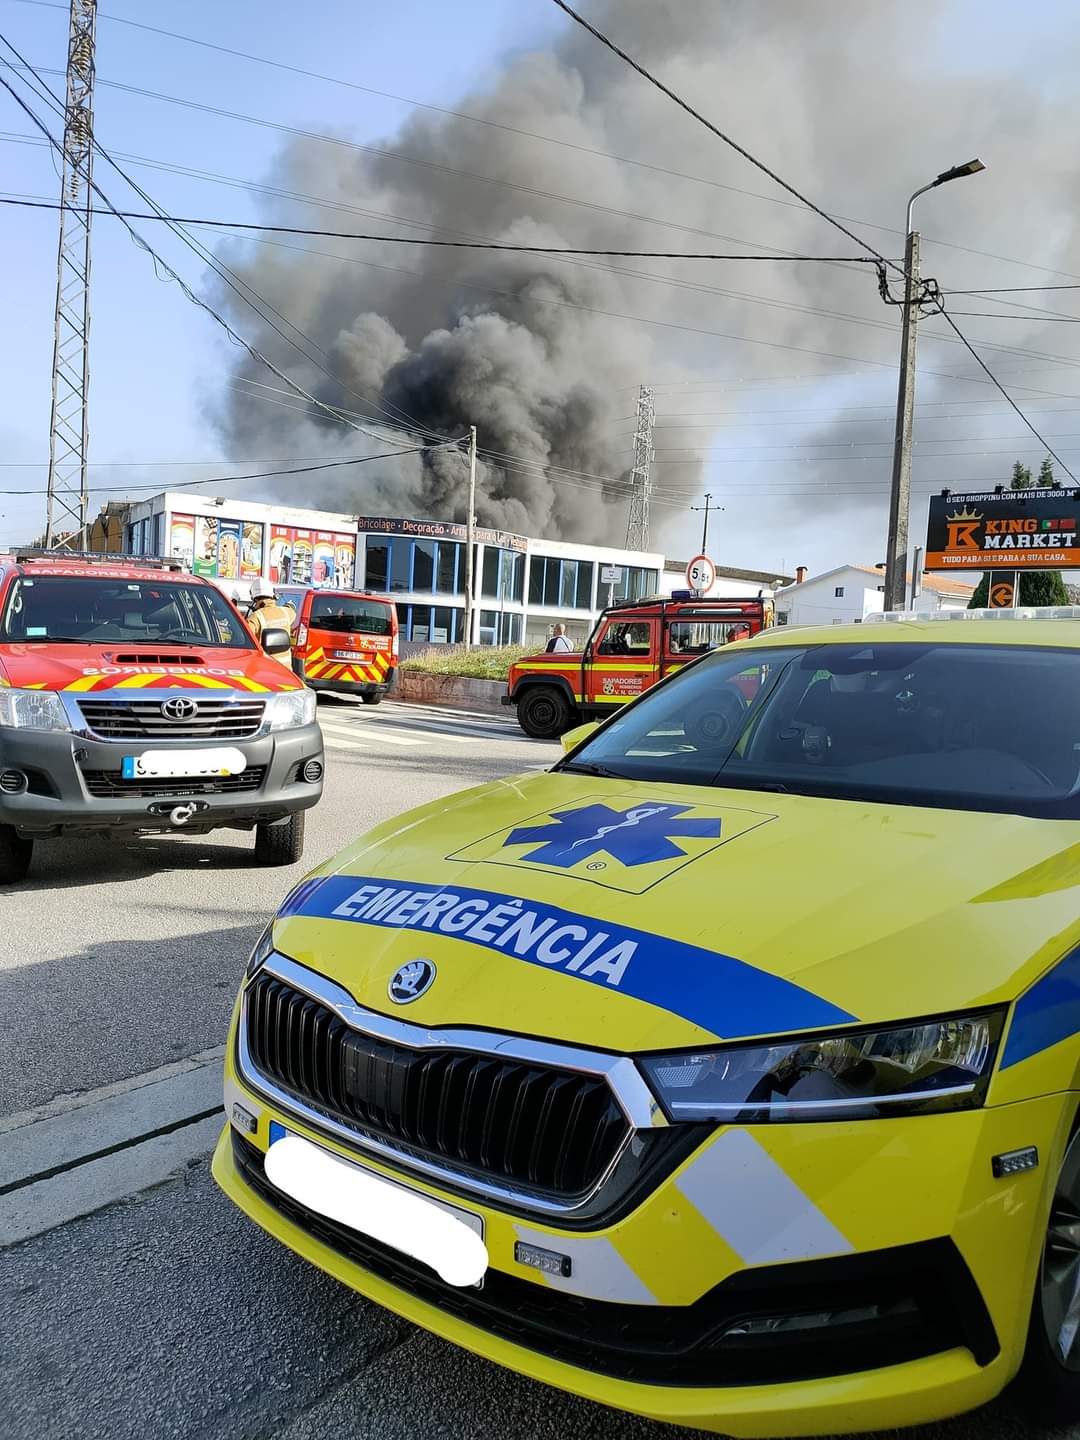 Incêndio em loja comercial de Vila Nova de Gaia em fase de conclusão